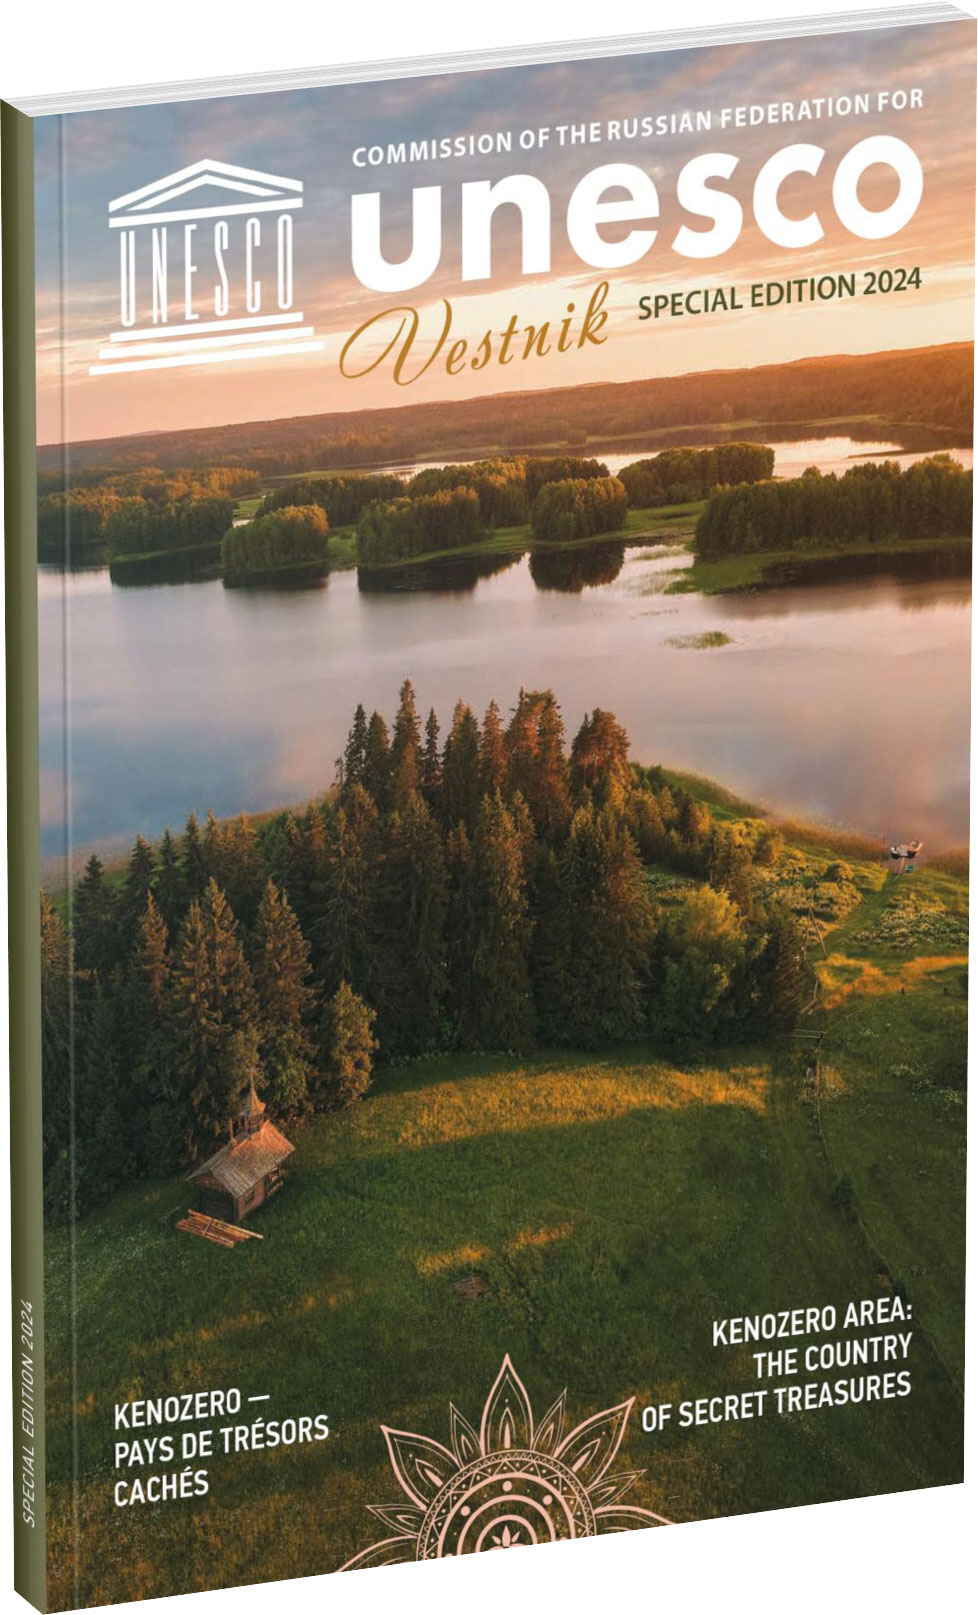 Обложка издания Vestnik UNESCO. Special Edition, Kenozero area: the country of secret treasures